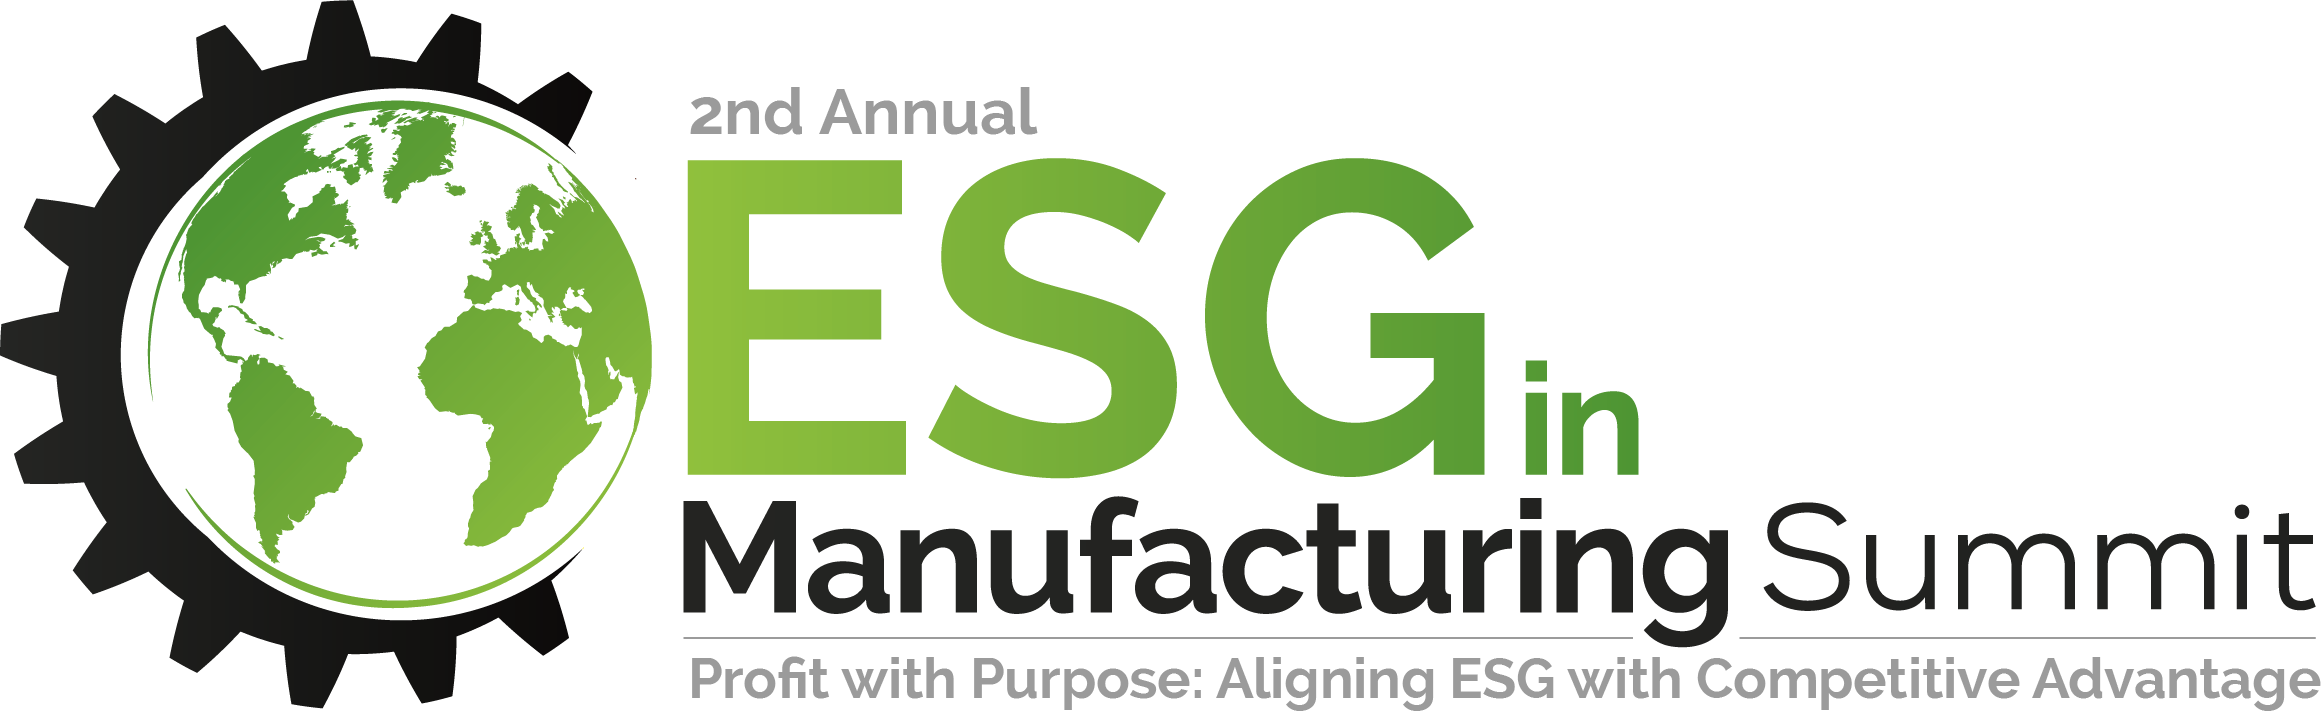 2nd ESG in Manufacturing Summit Logo Strap (1)